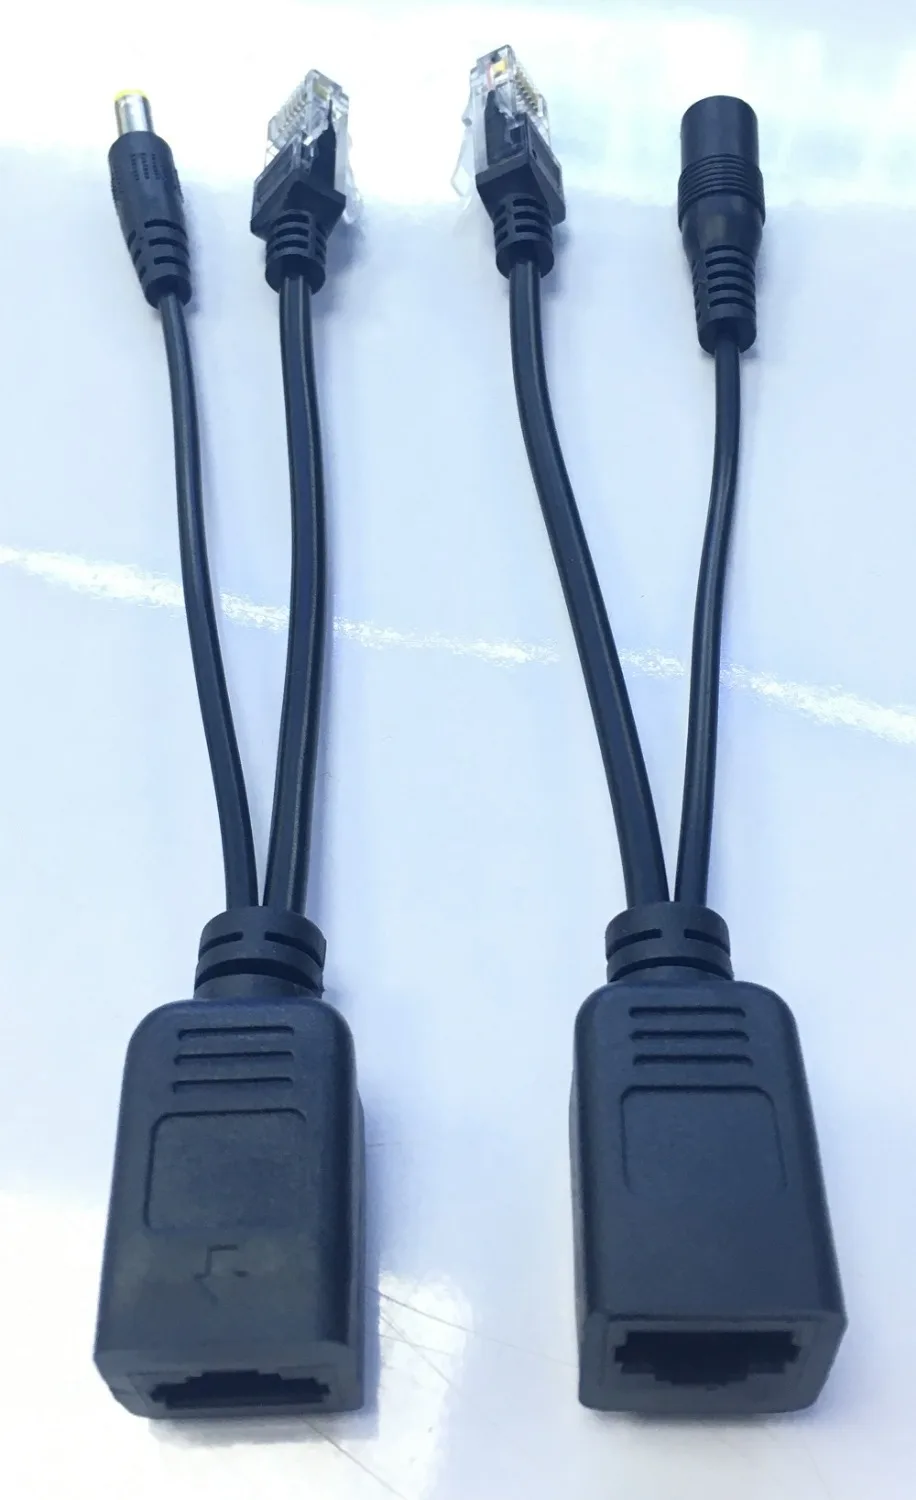 POE кабель Адаптерный кабель Разветвитель Инжектор Модуль питания 12-48 В POwer over Ethernet для IP-камеры Переключатель включен.